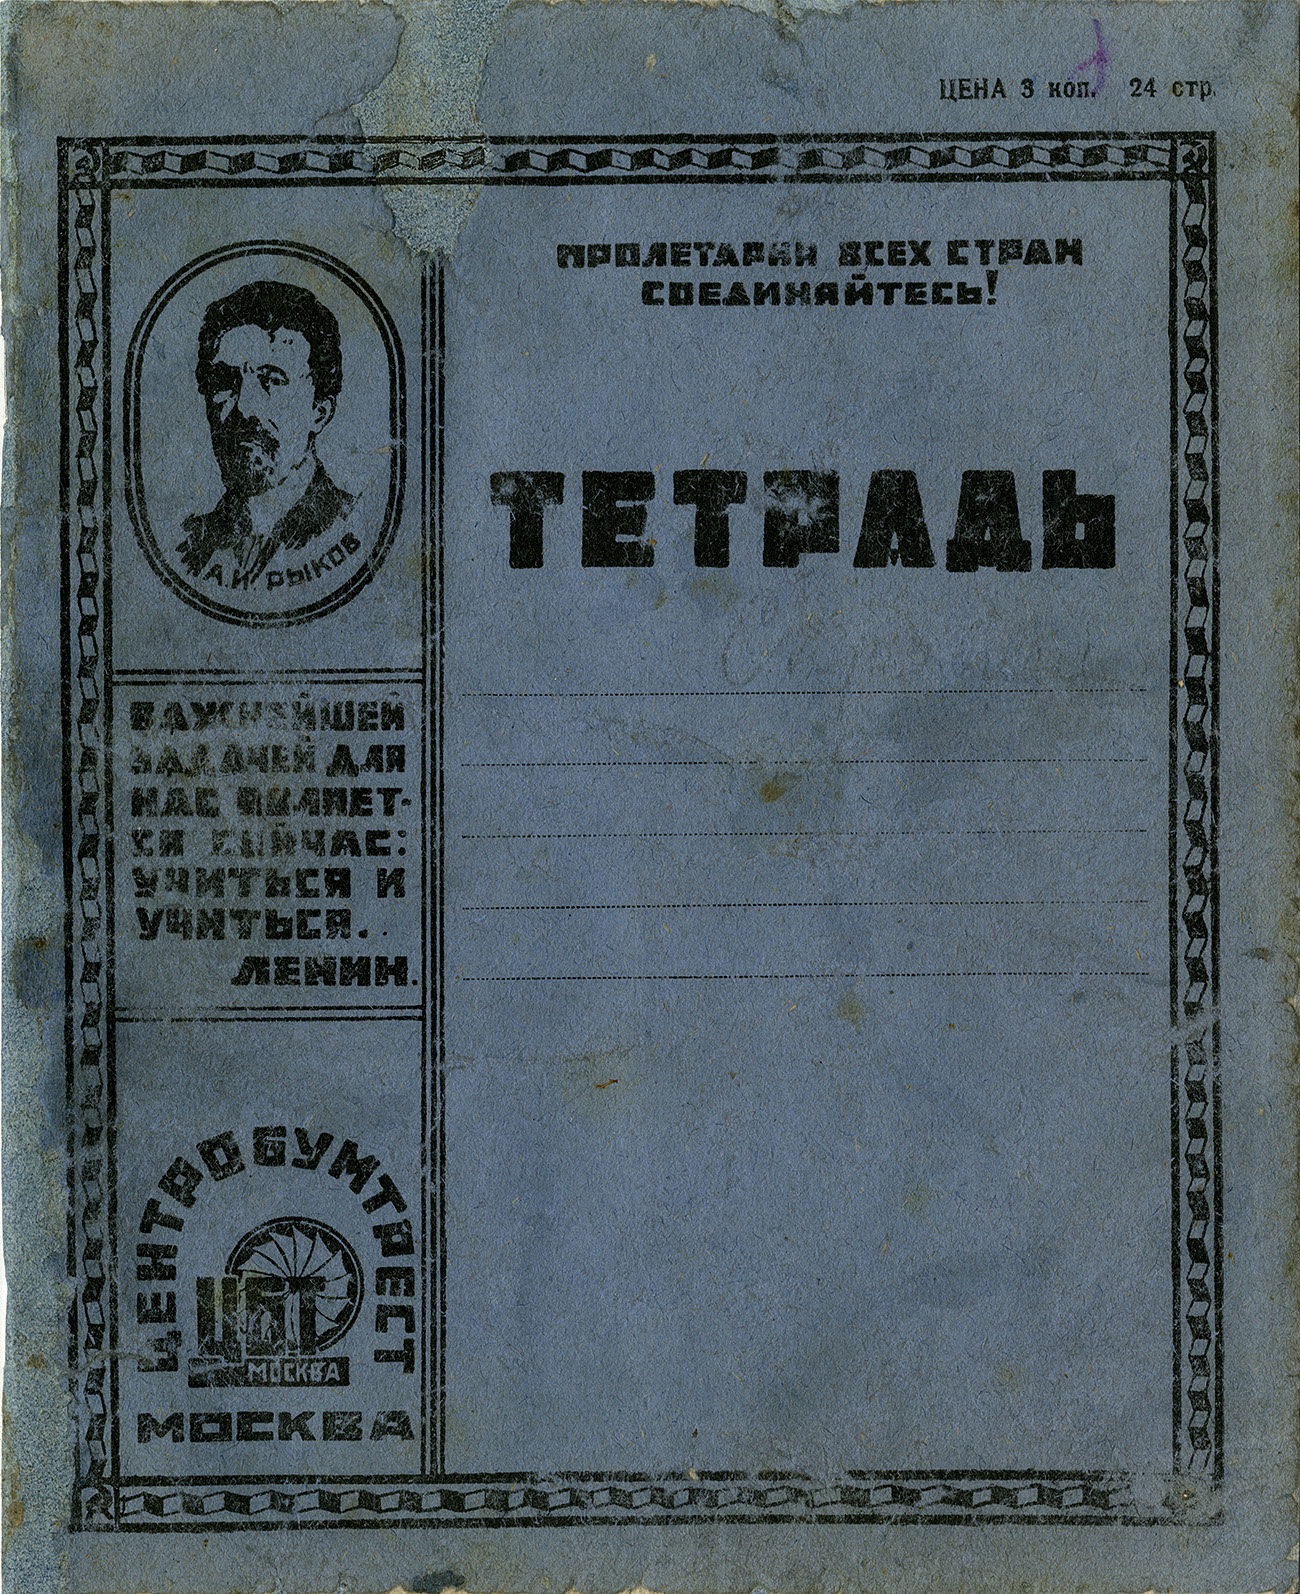 Тетрадь центробумтрест "Рыков", 1927, 178х220